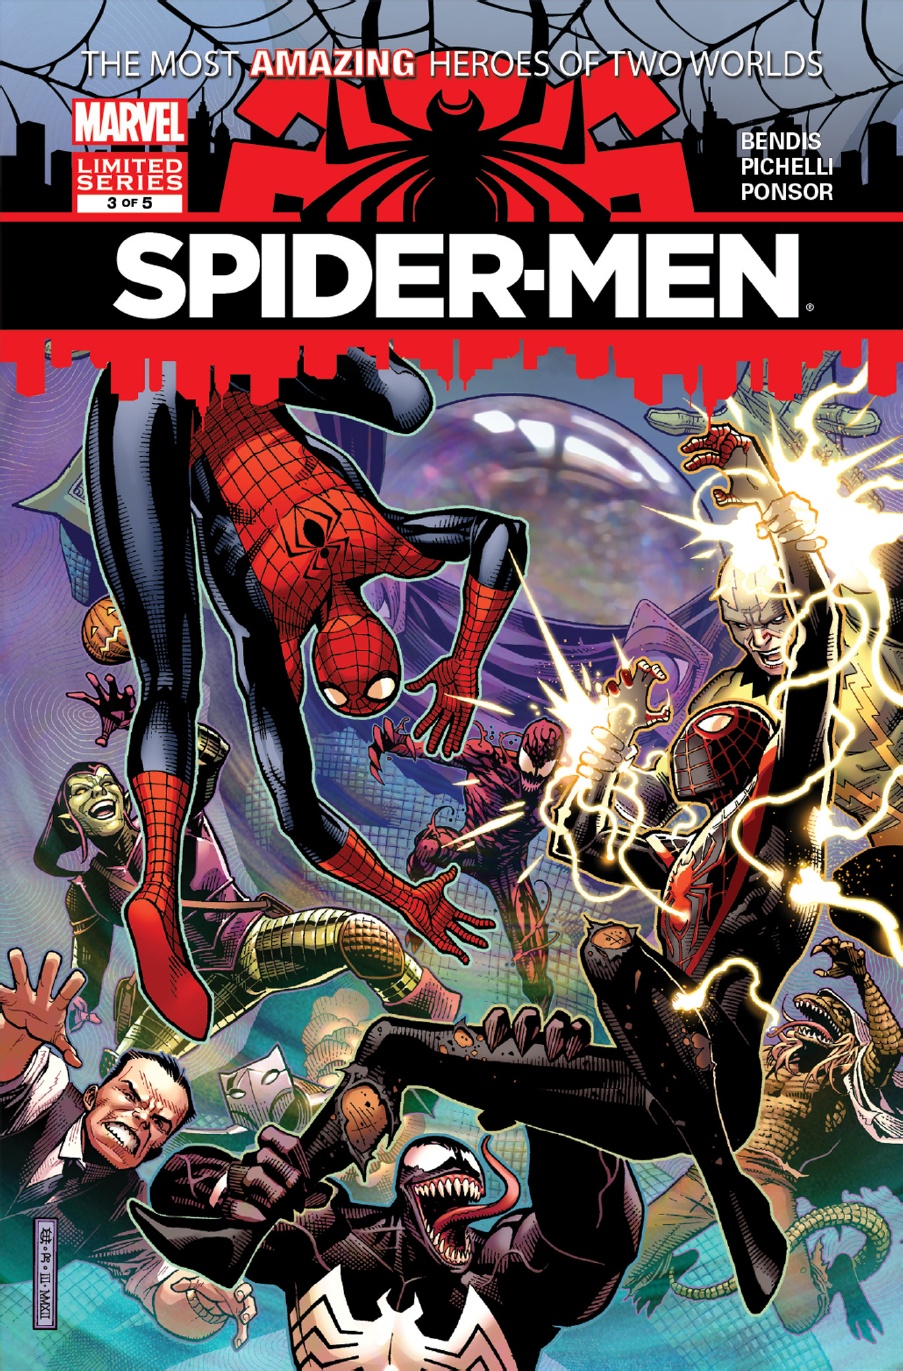 Spider-men #2